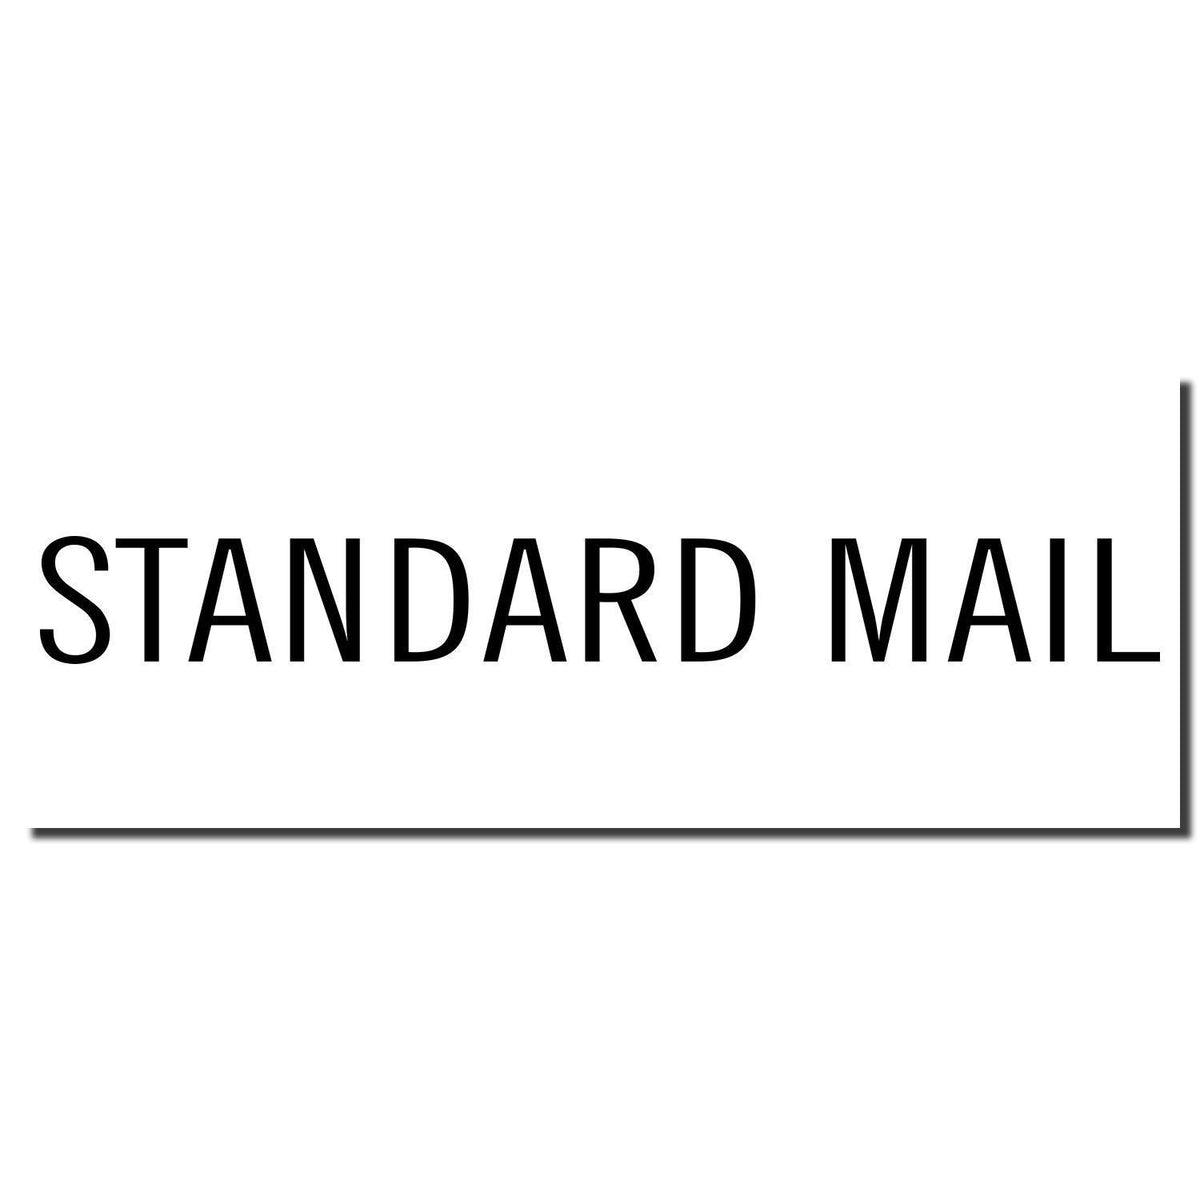 Enlarged Imprint Standard Mail Rubber Stamp Sample